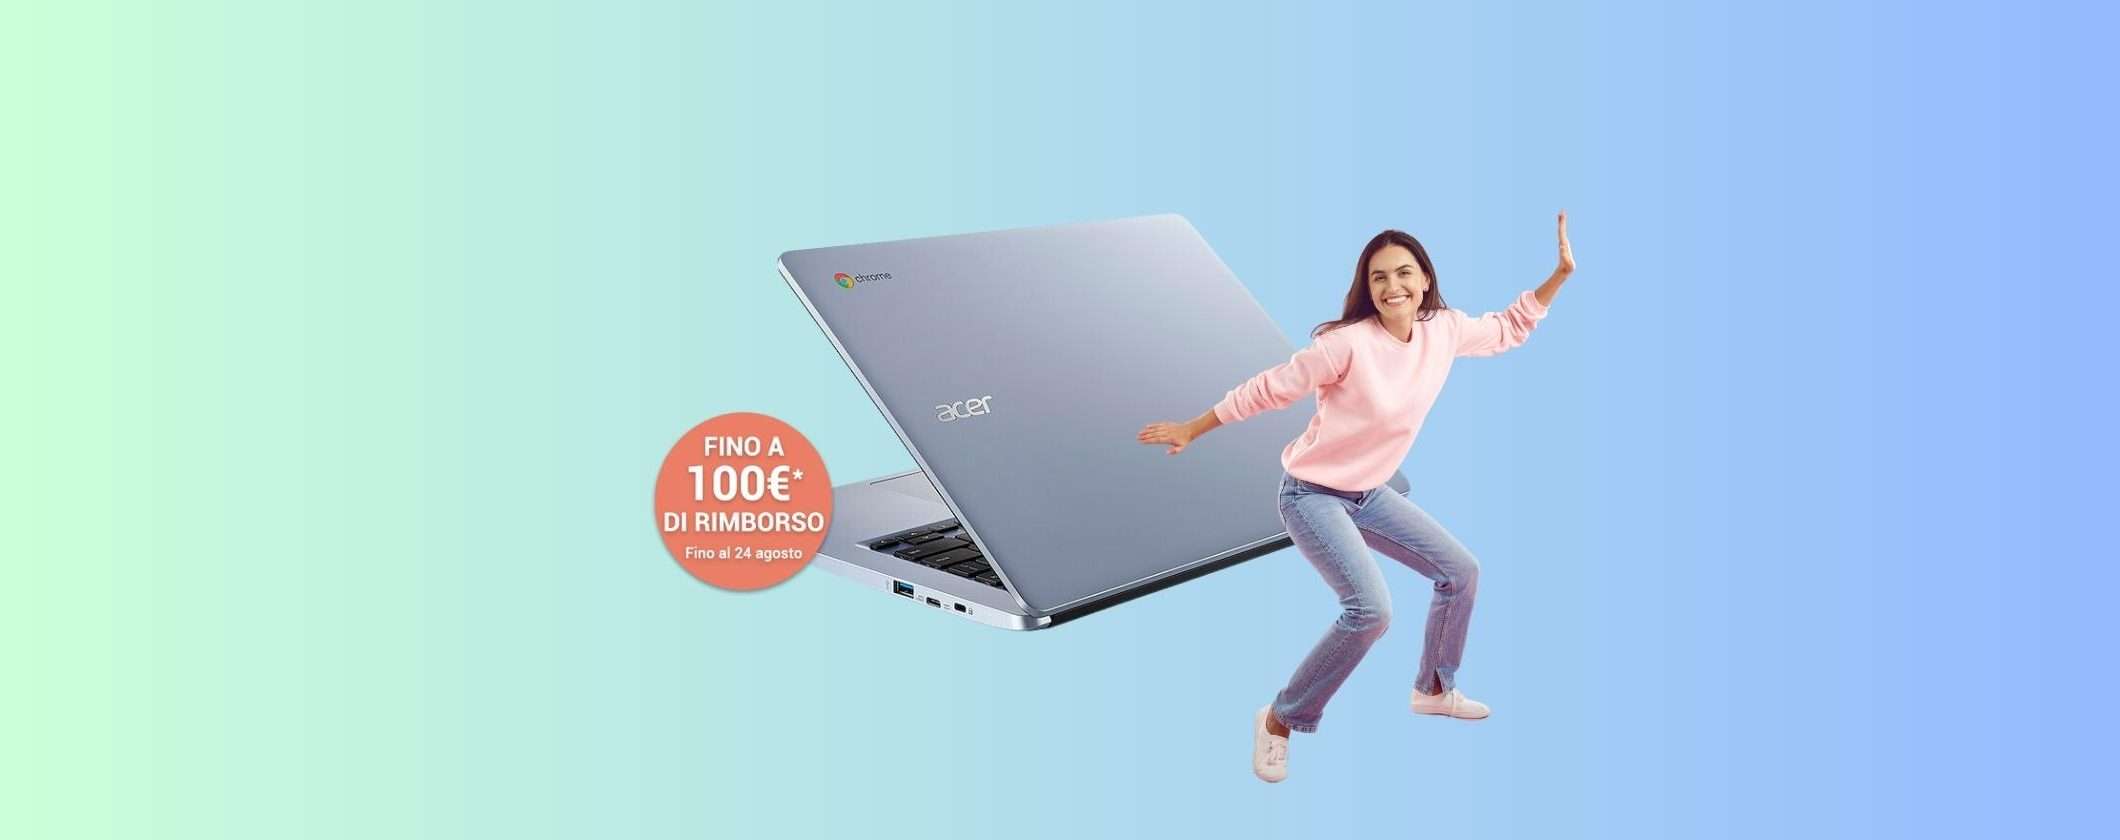 Acquista Acer Chromebook a 229€: ottieni un rimborso fino a 100€